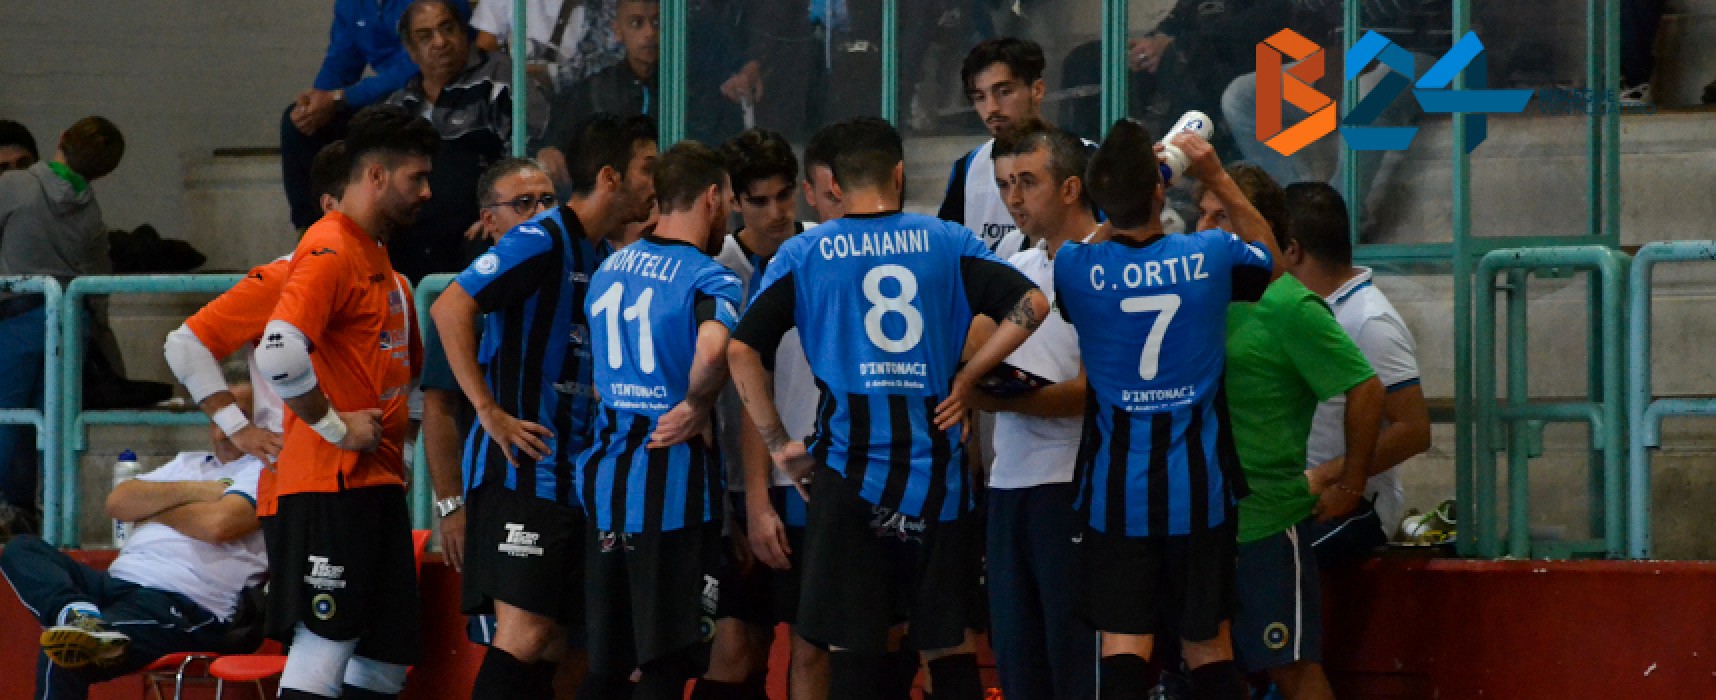 FINALE: Futsal Bisceglie – Catanzaro 4-3